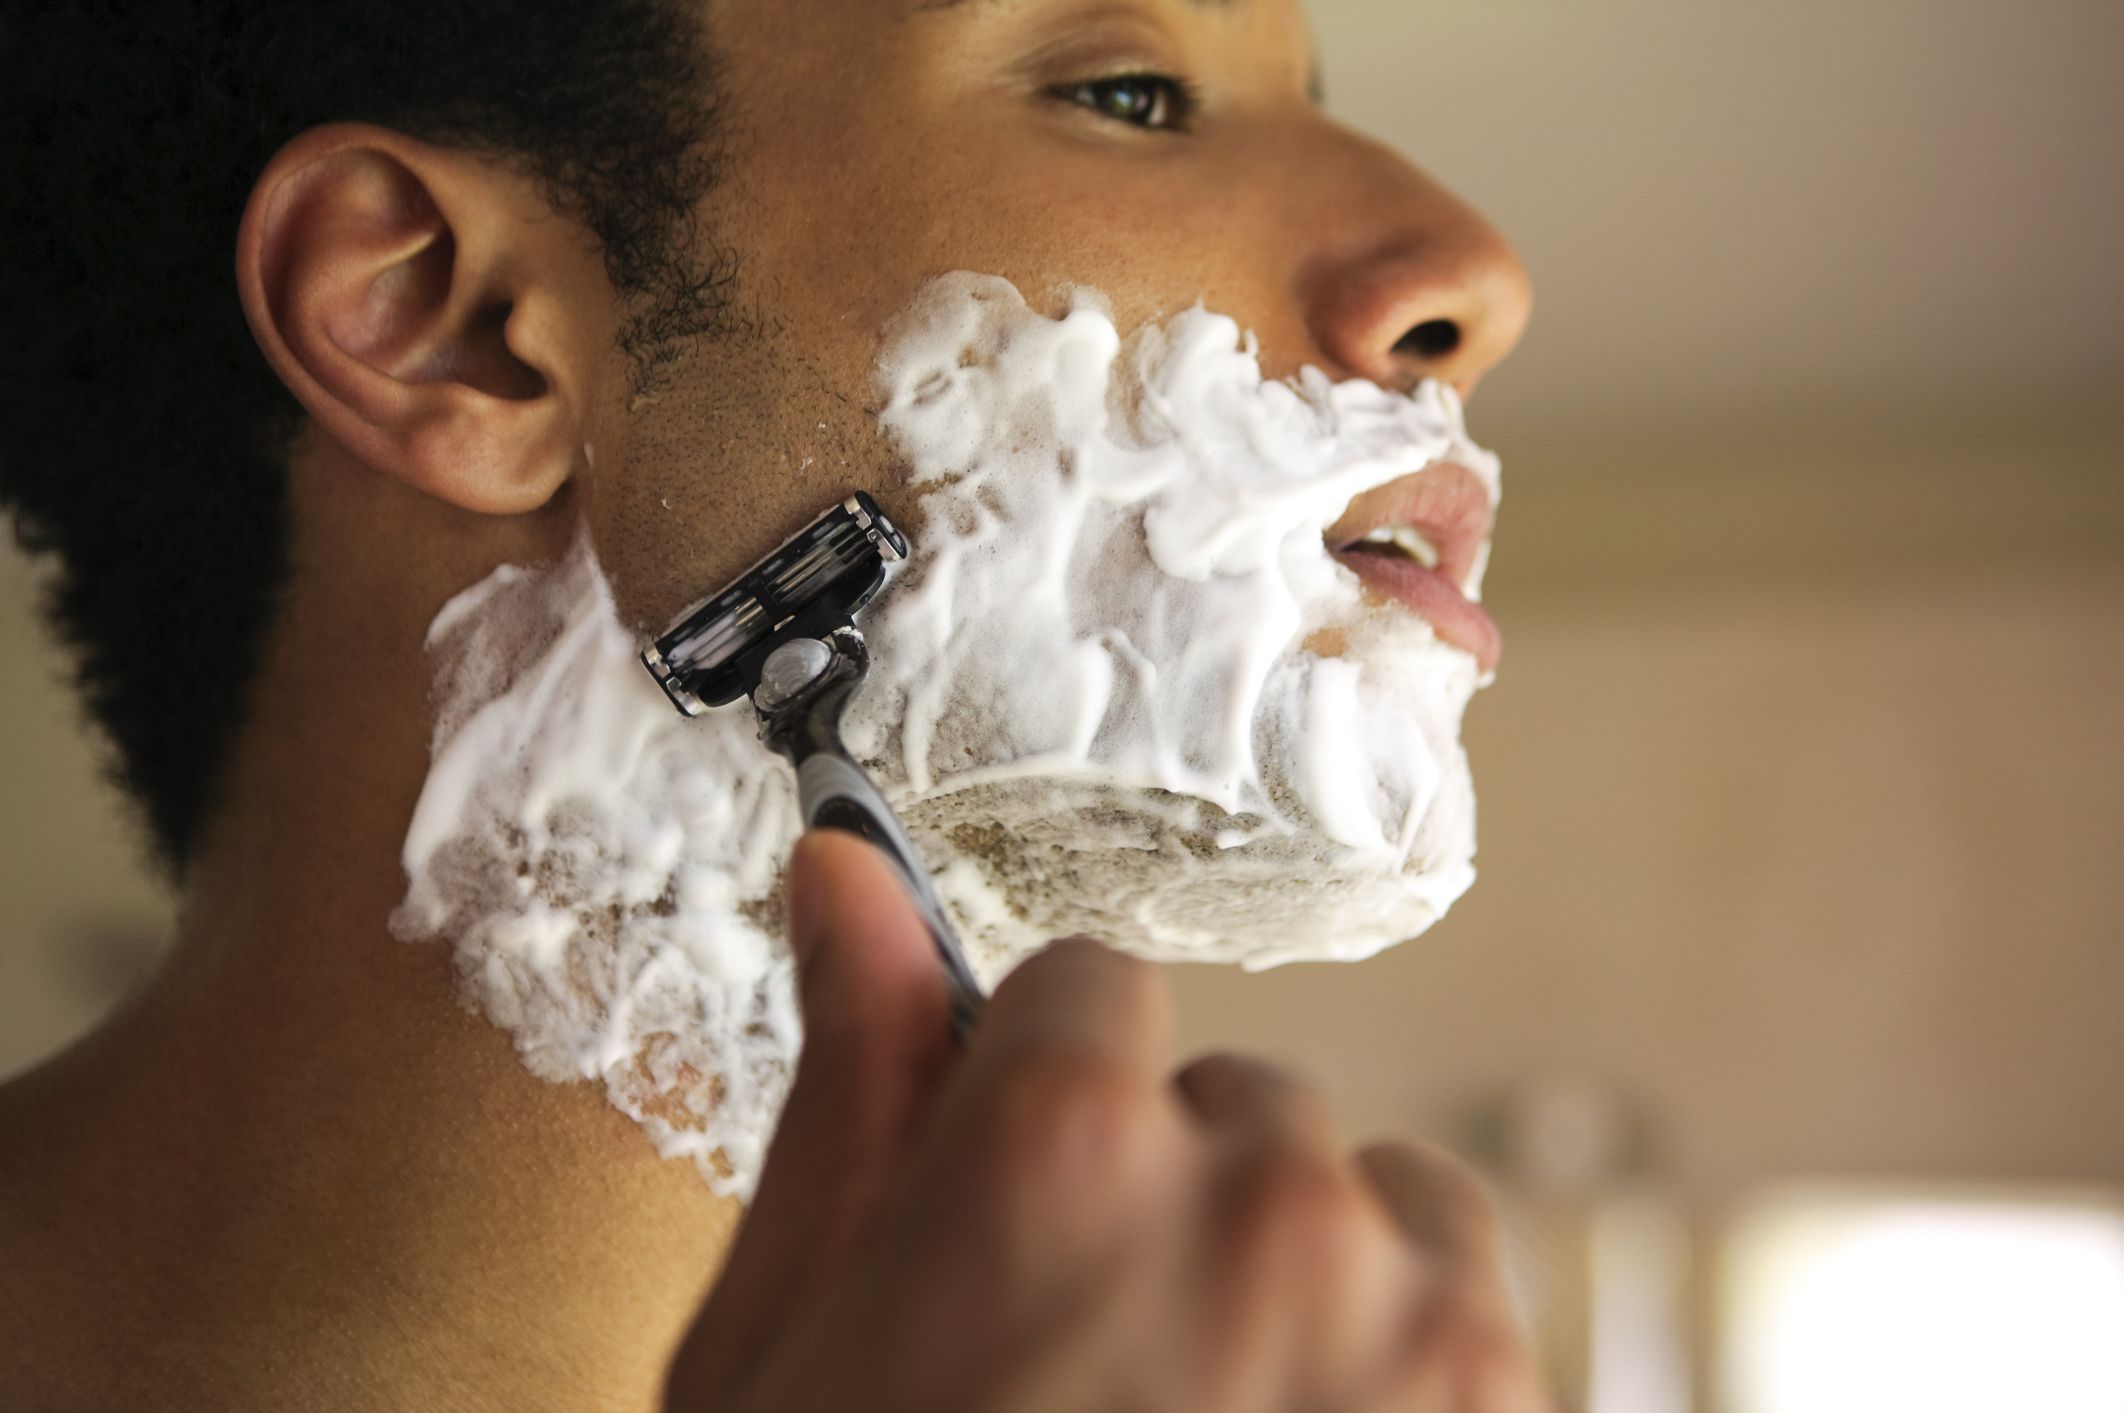 Бритье муж. Пена джилет чистое бритье. Мужчина бреется. Пена для бритья для мужчин. Мужик в пену для бритья.